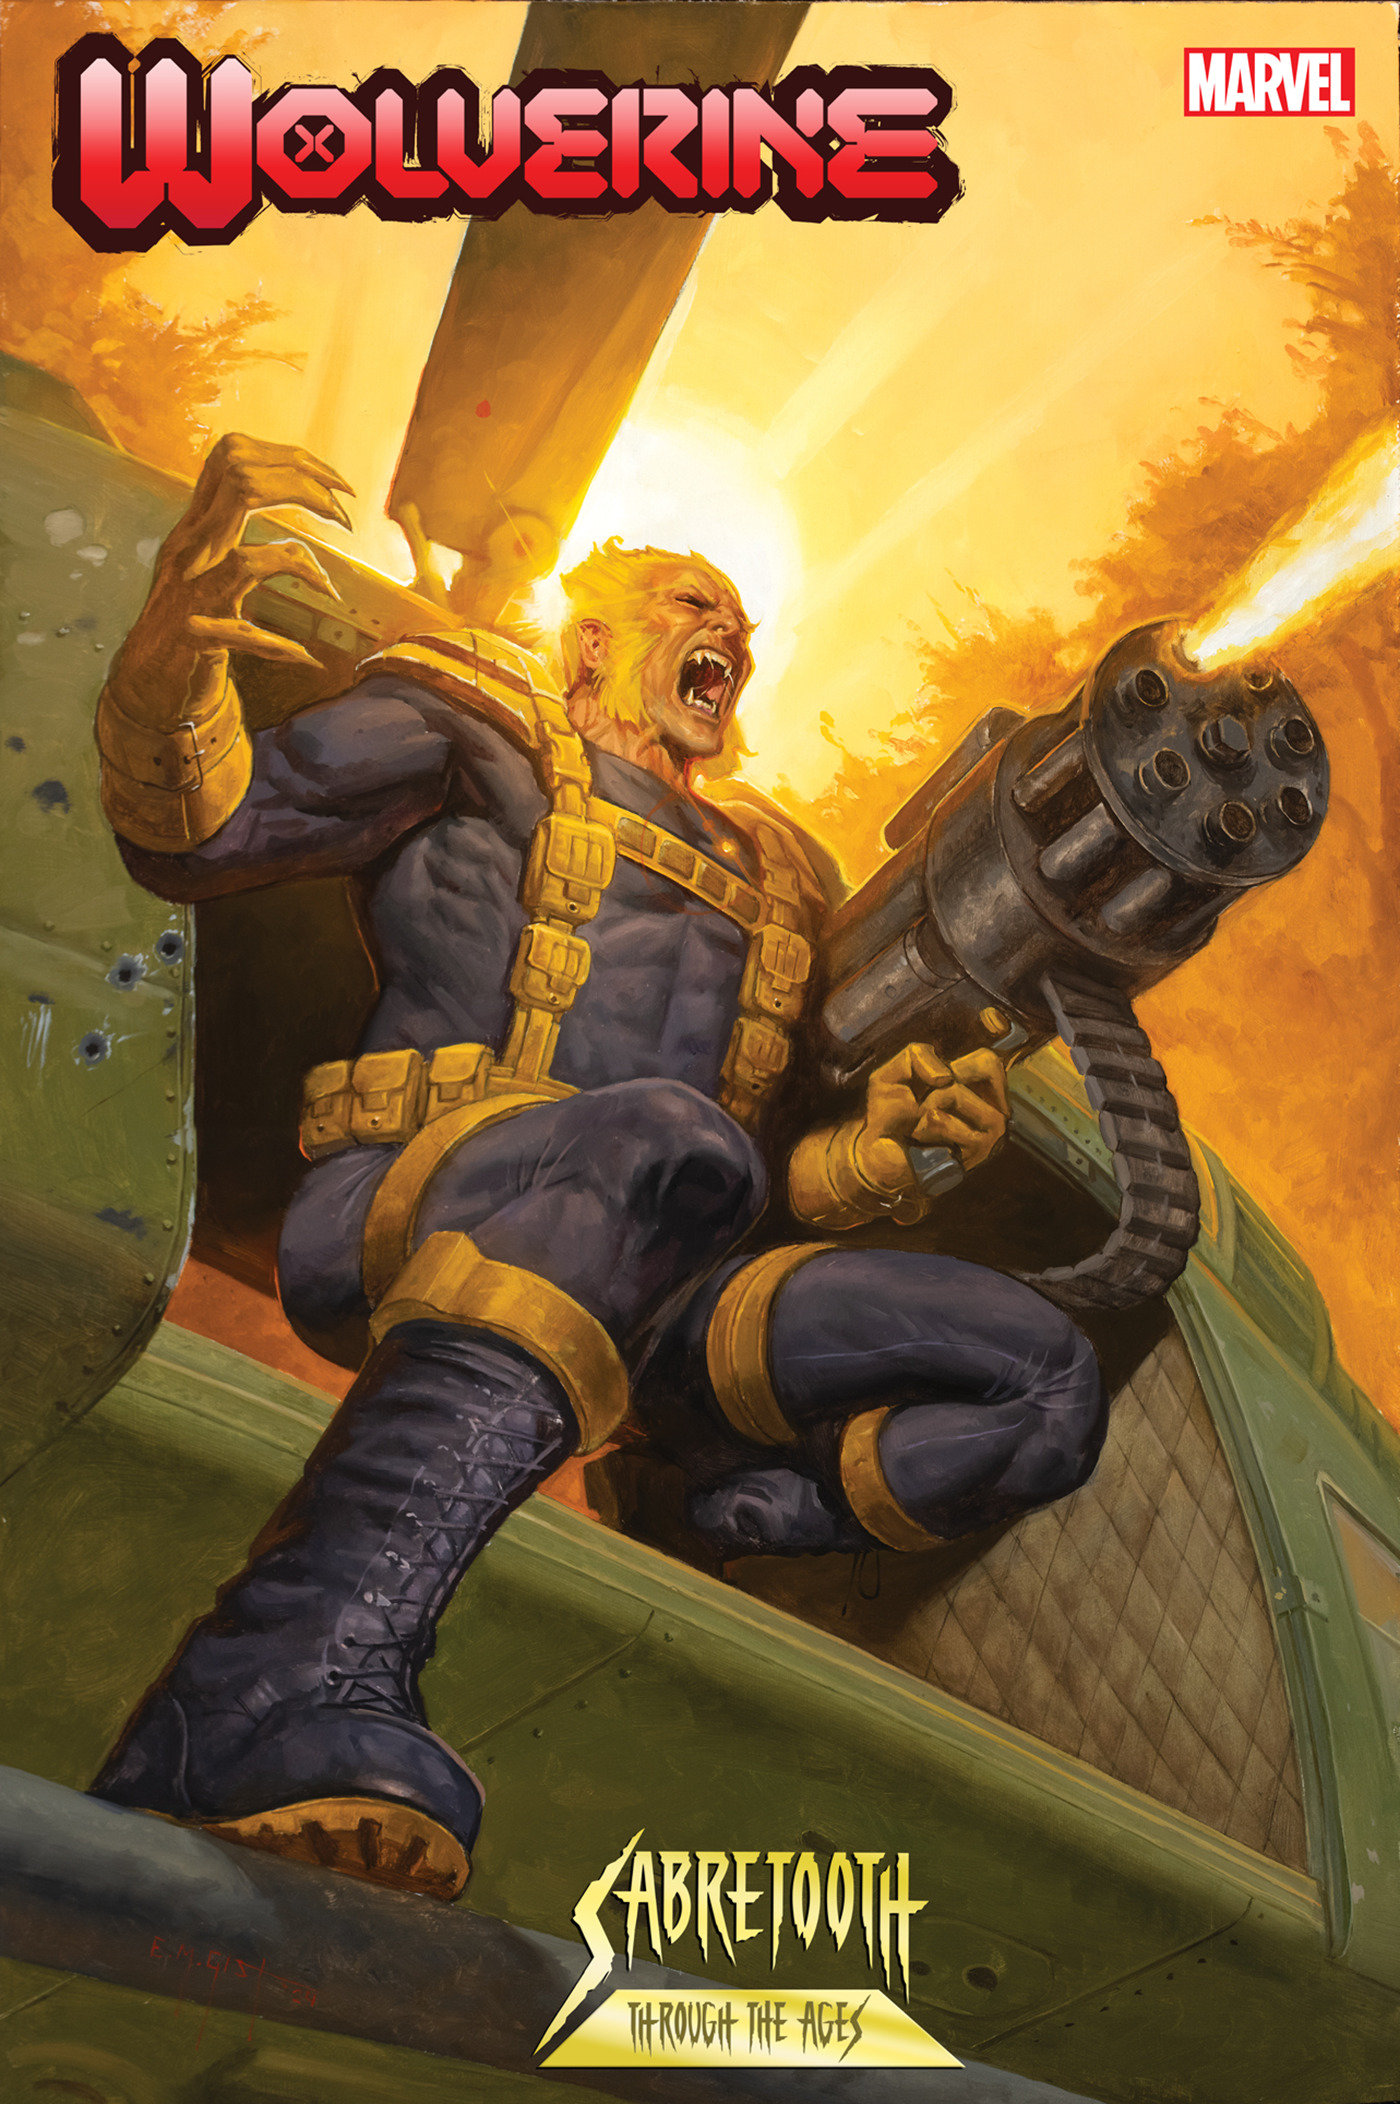 Wolverine #49 Em Gist Sabretooth Variant